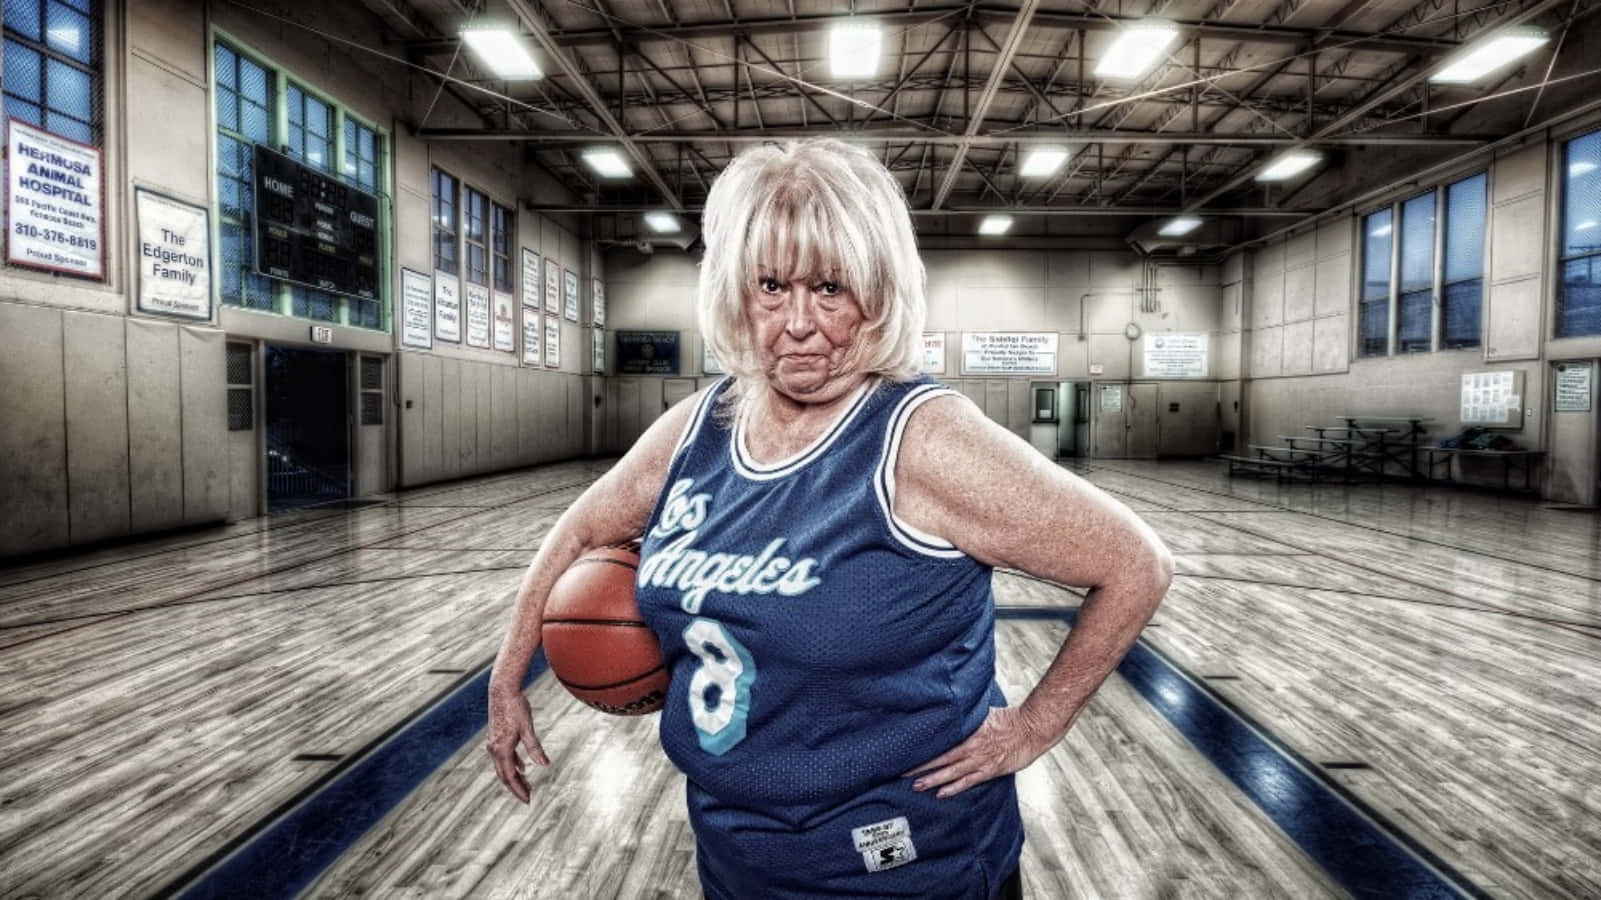 Divertentiimmagini Di Una Vecchia Signora Che Gioca A Basket